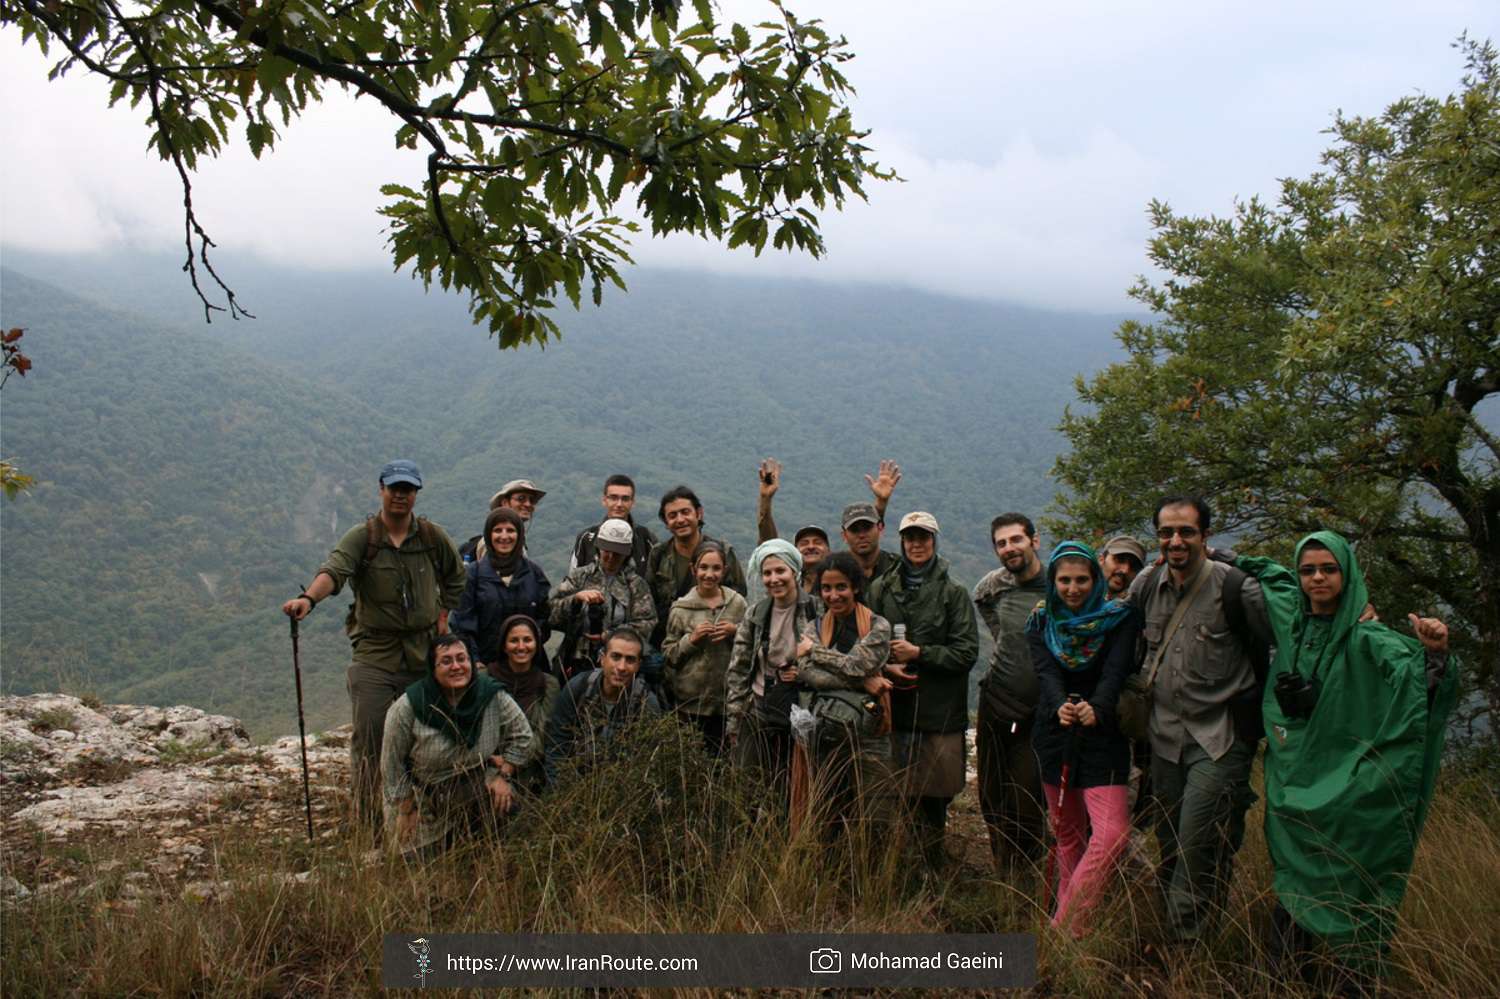 7-Day Iran Wildlife Tour: The Adventure through Golestan National Park